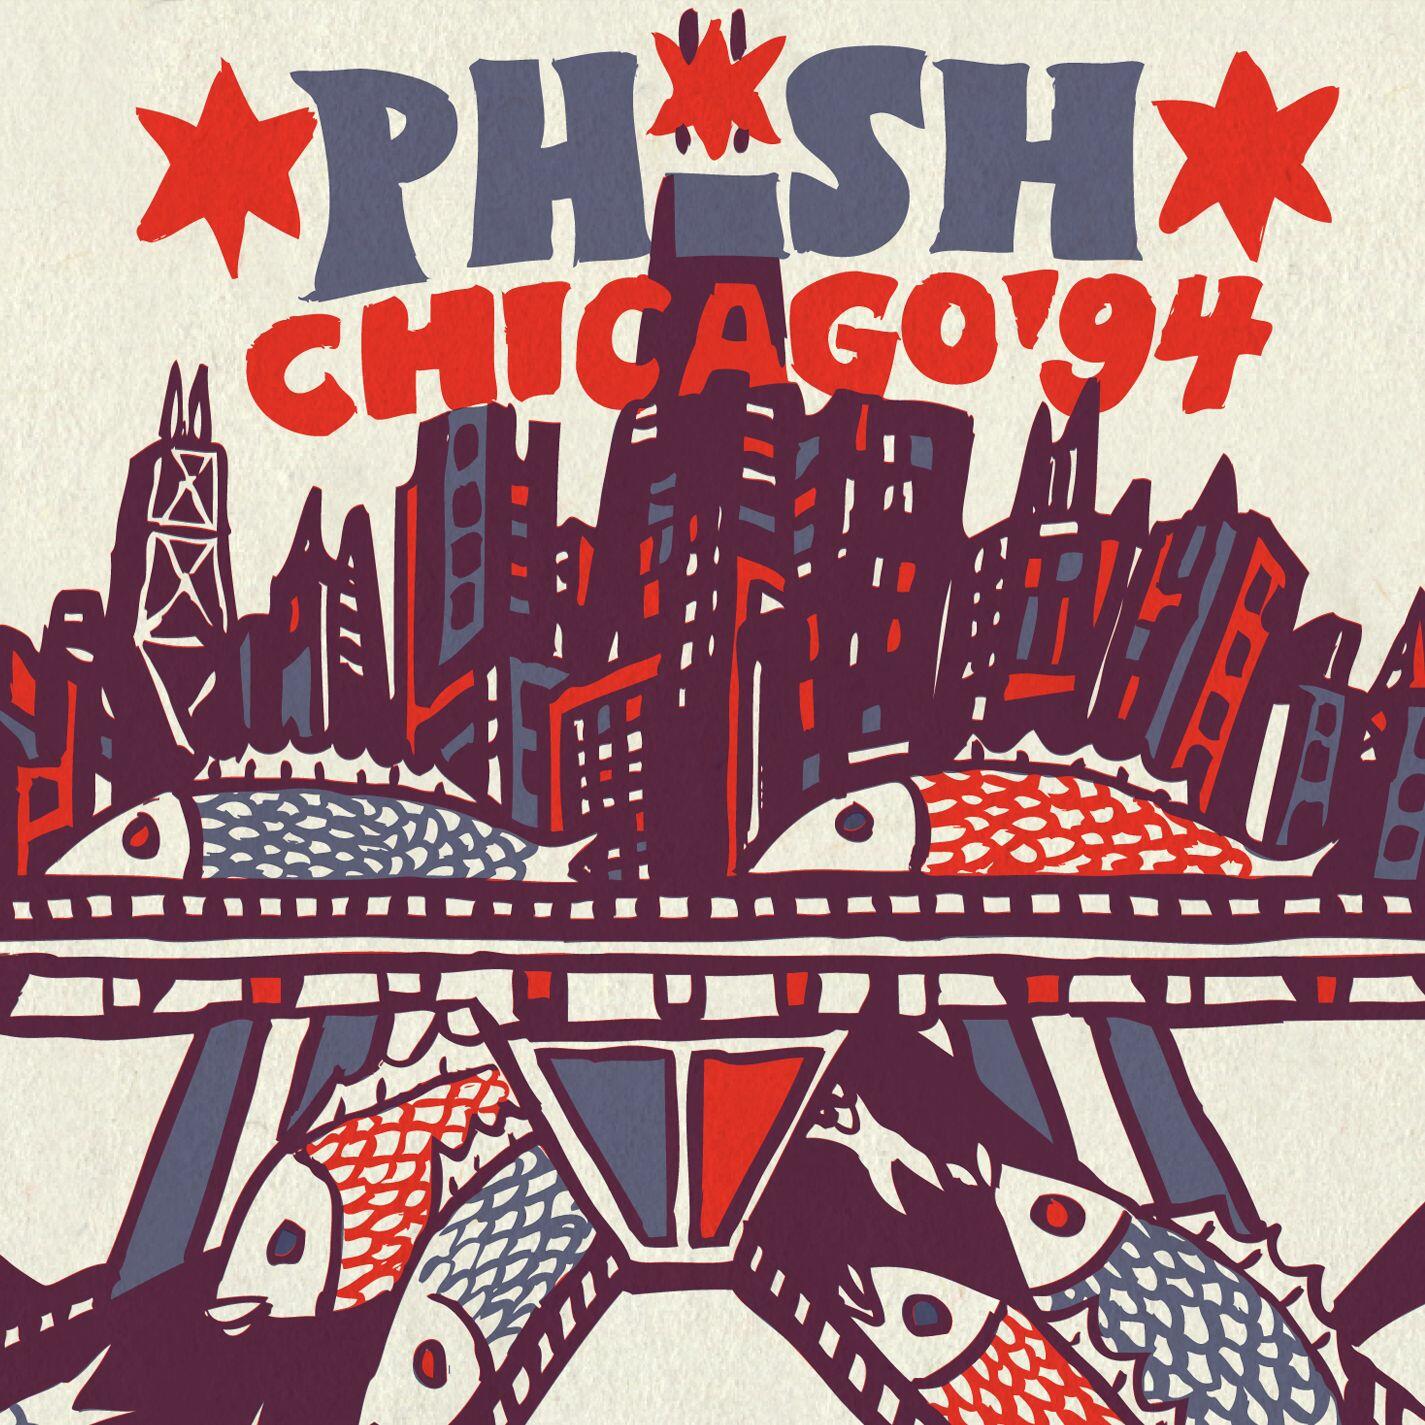 Phish Phish Chicago '94 iHeart